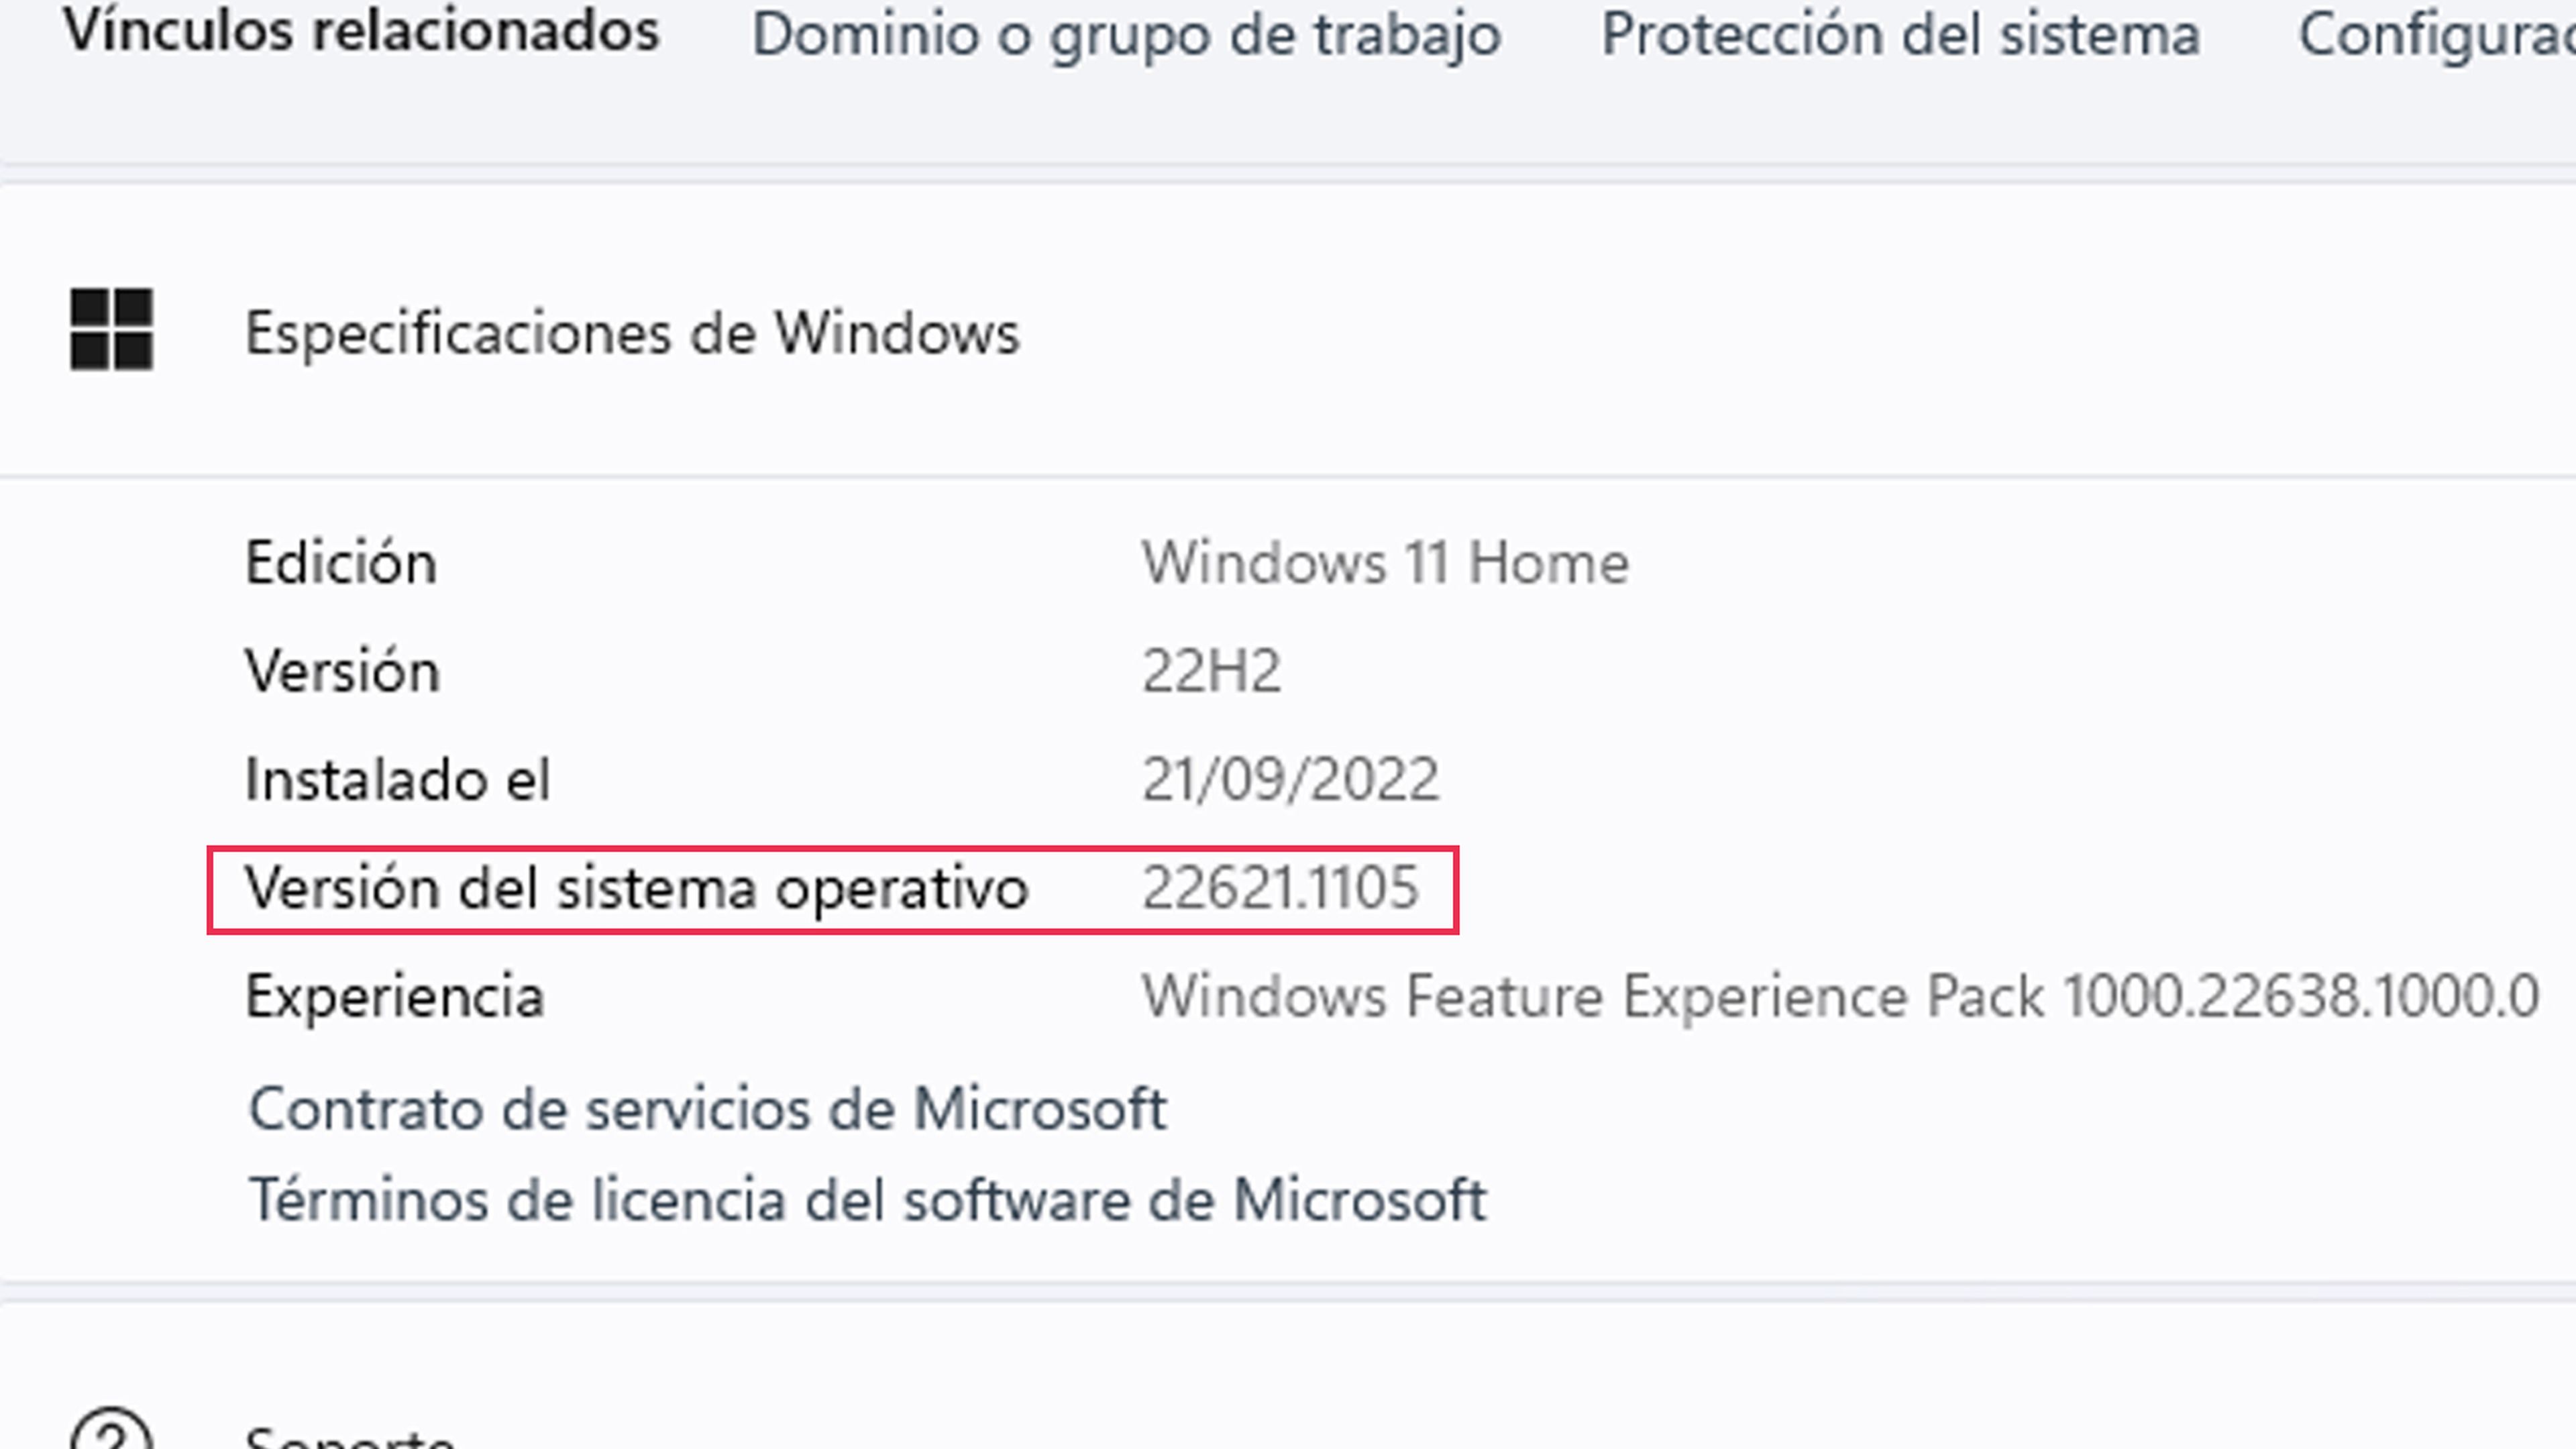 Versión del sistema operativo (Número de compilación) de Windows 11